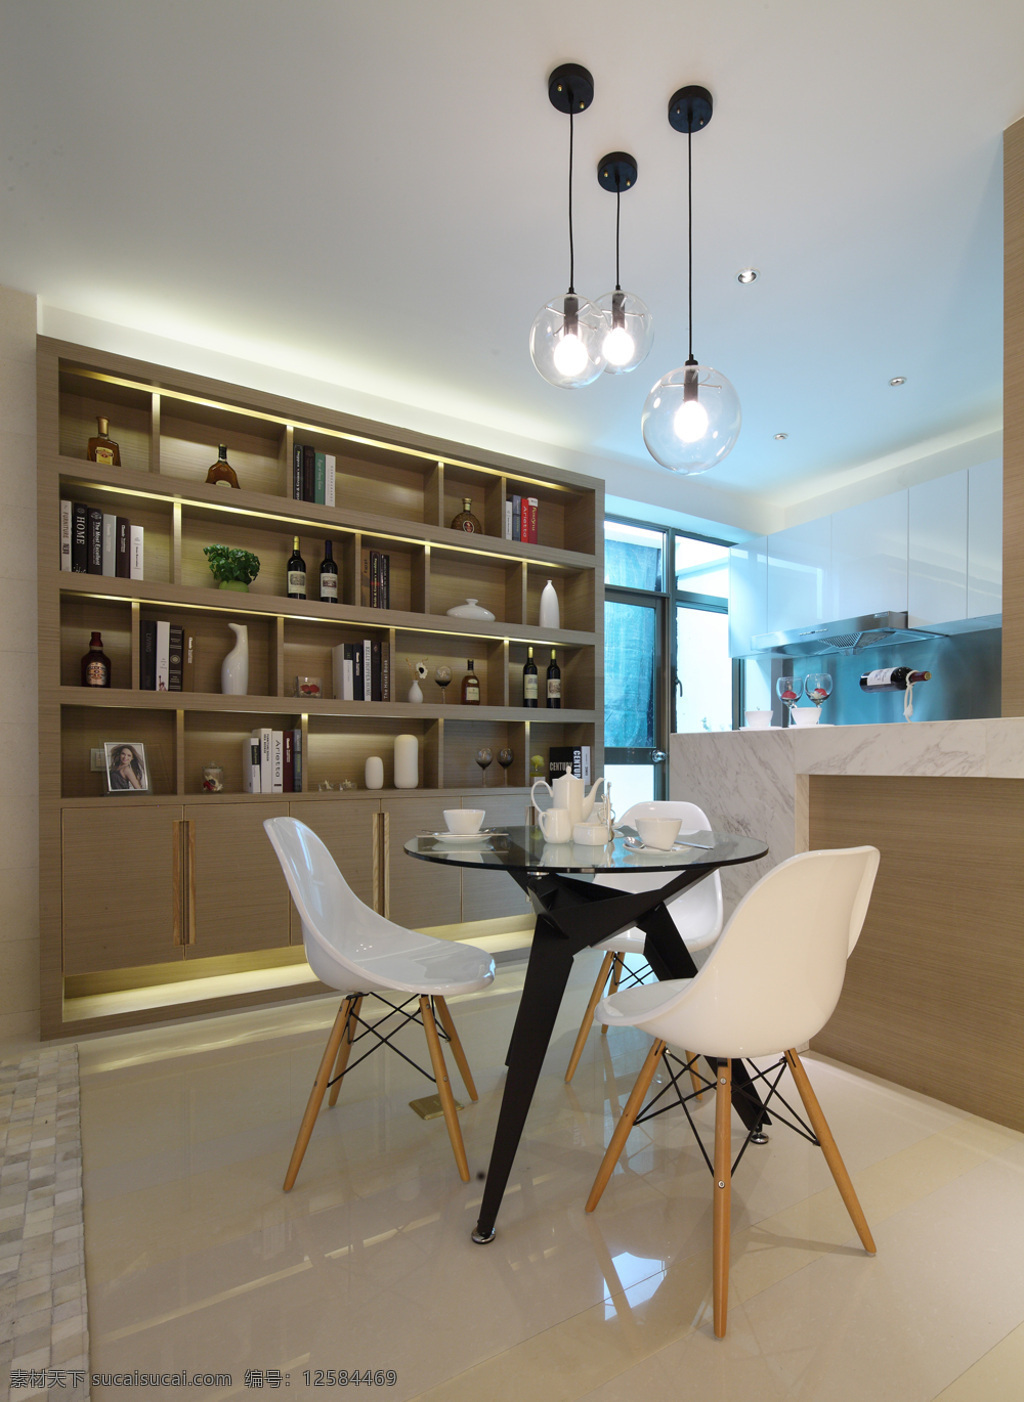 现代 简约 客厅 开放式 厨房 书架 室内装修 效果图 长吊灯 展示架 圆桌 白色座椅 客厅装修